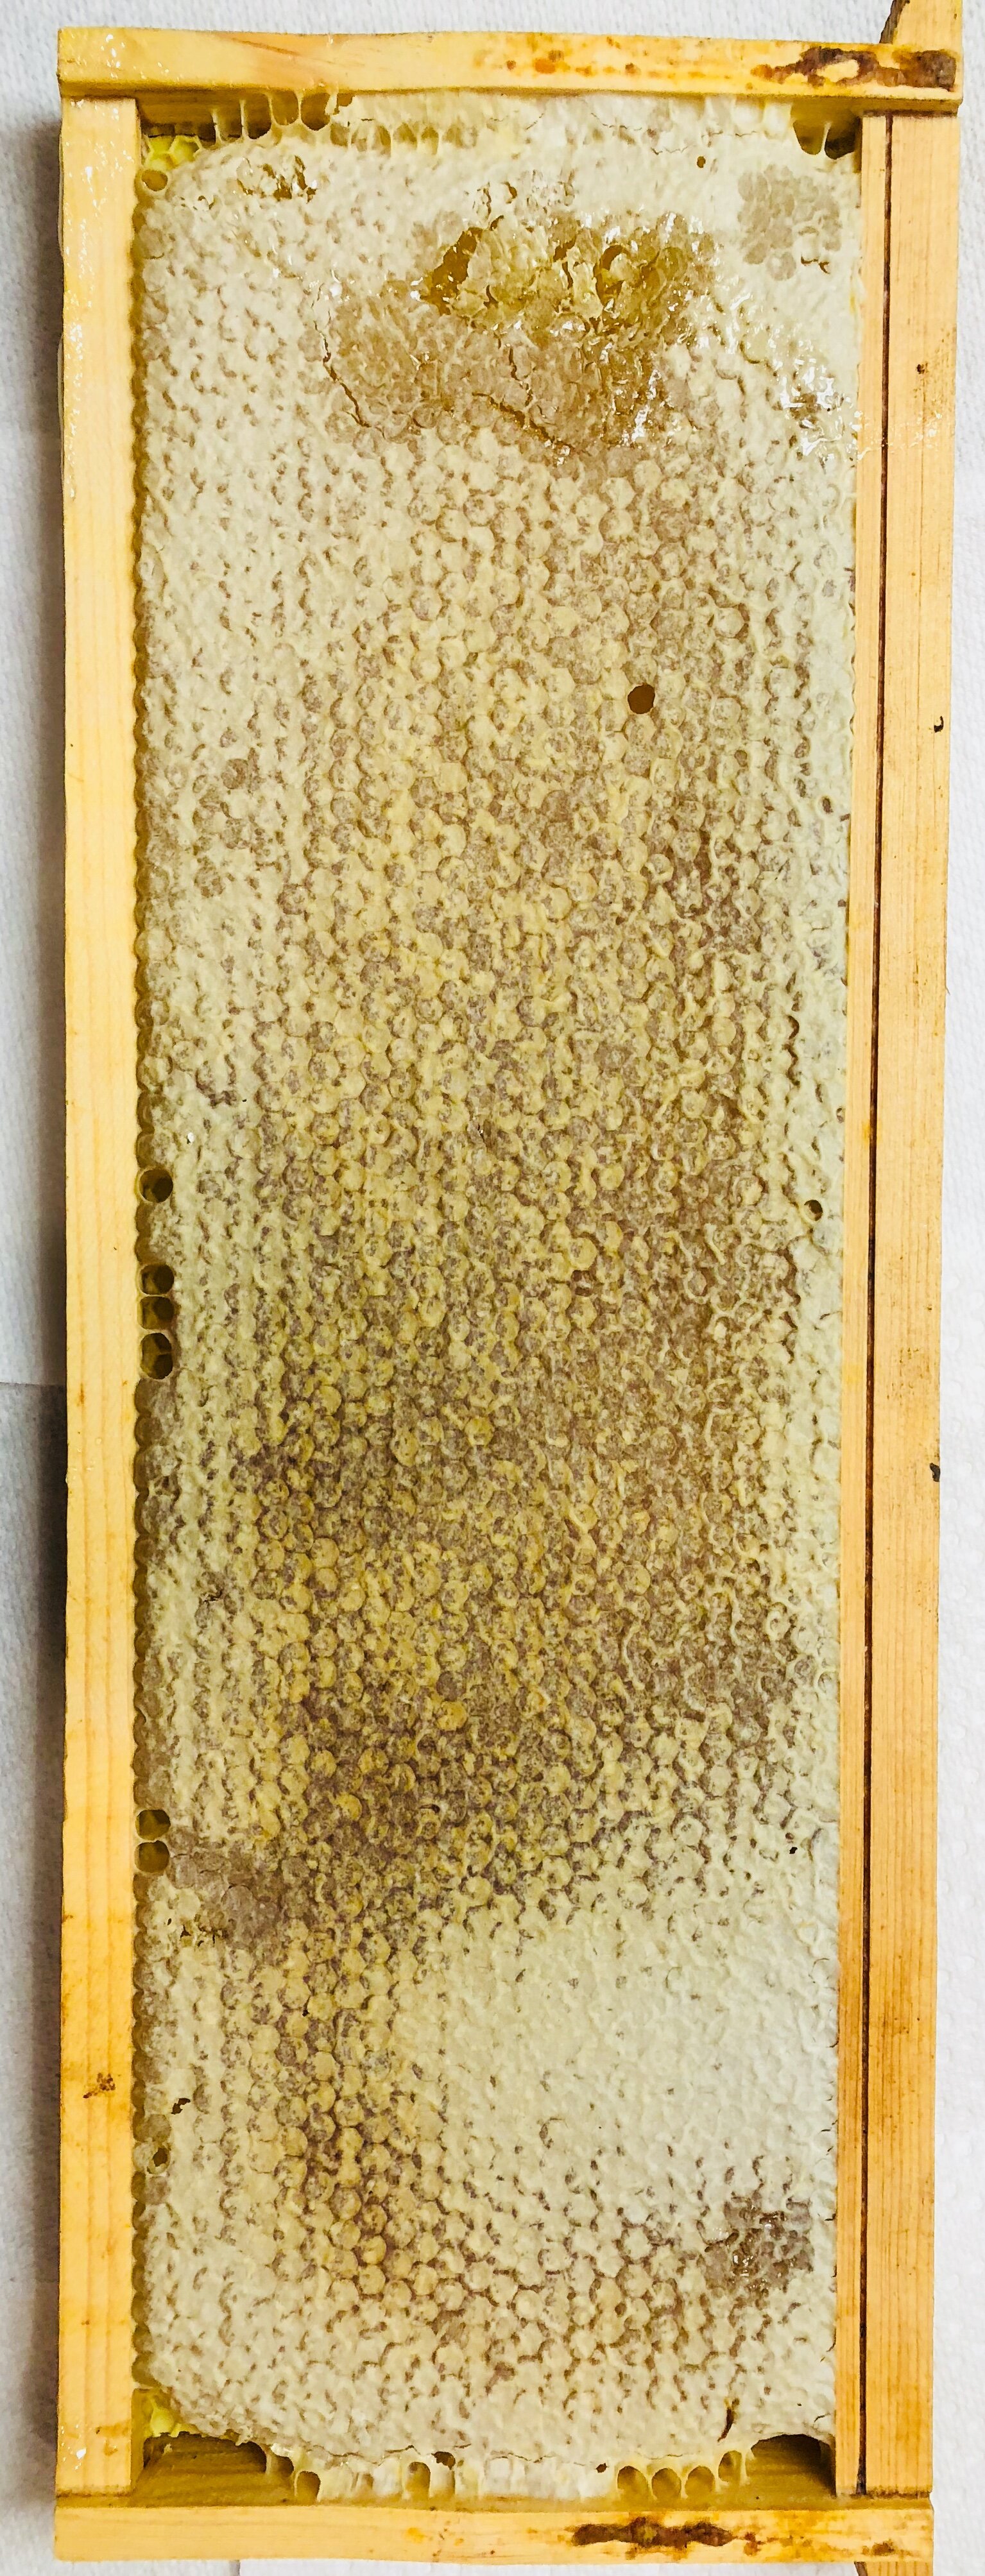 Honey in the frame